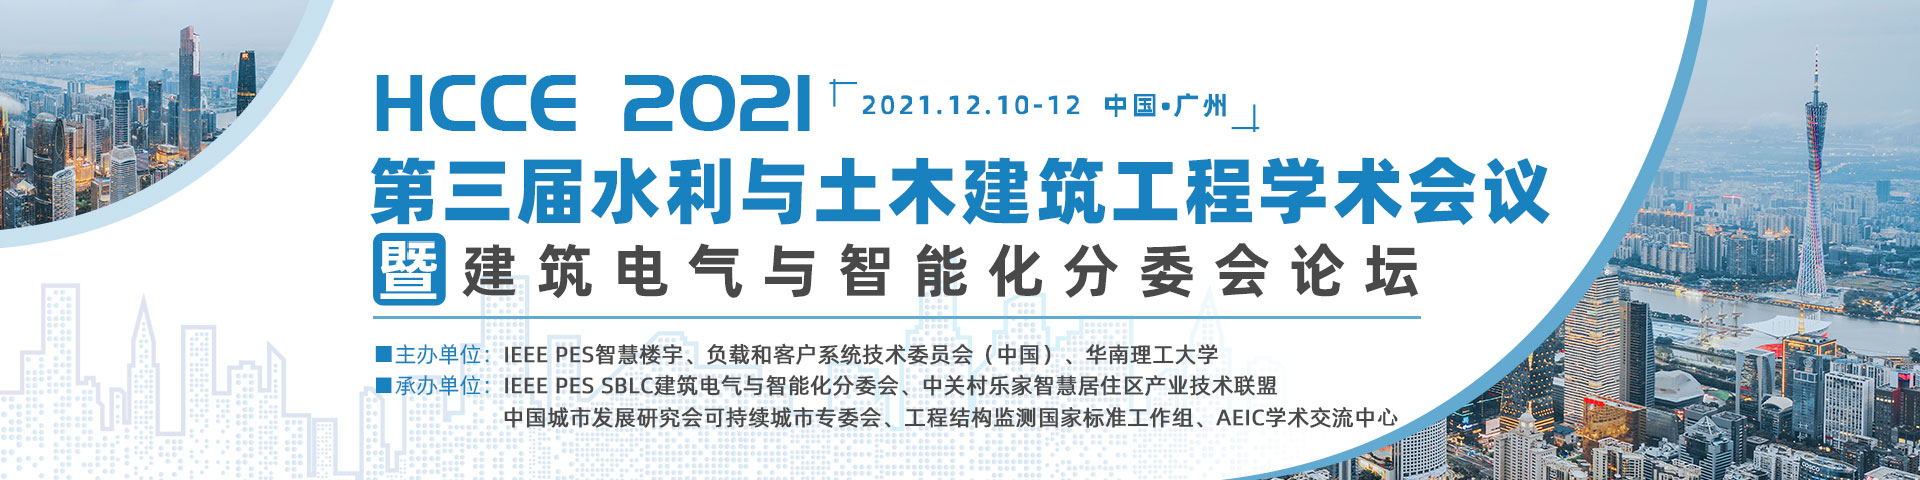 12月广州-HCCE-2021-banner中-凌敏-202111.2.jpg